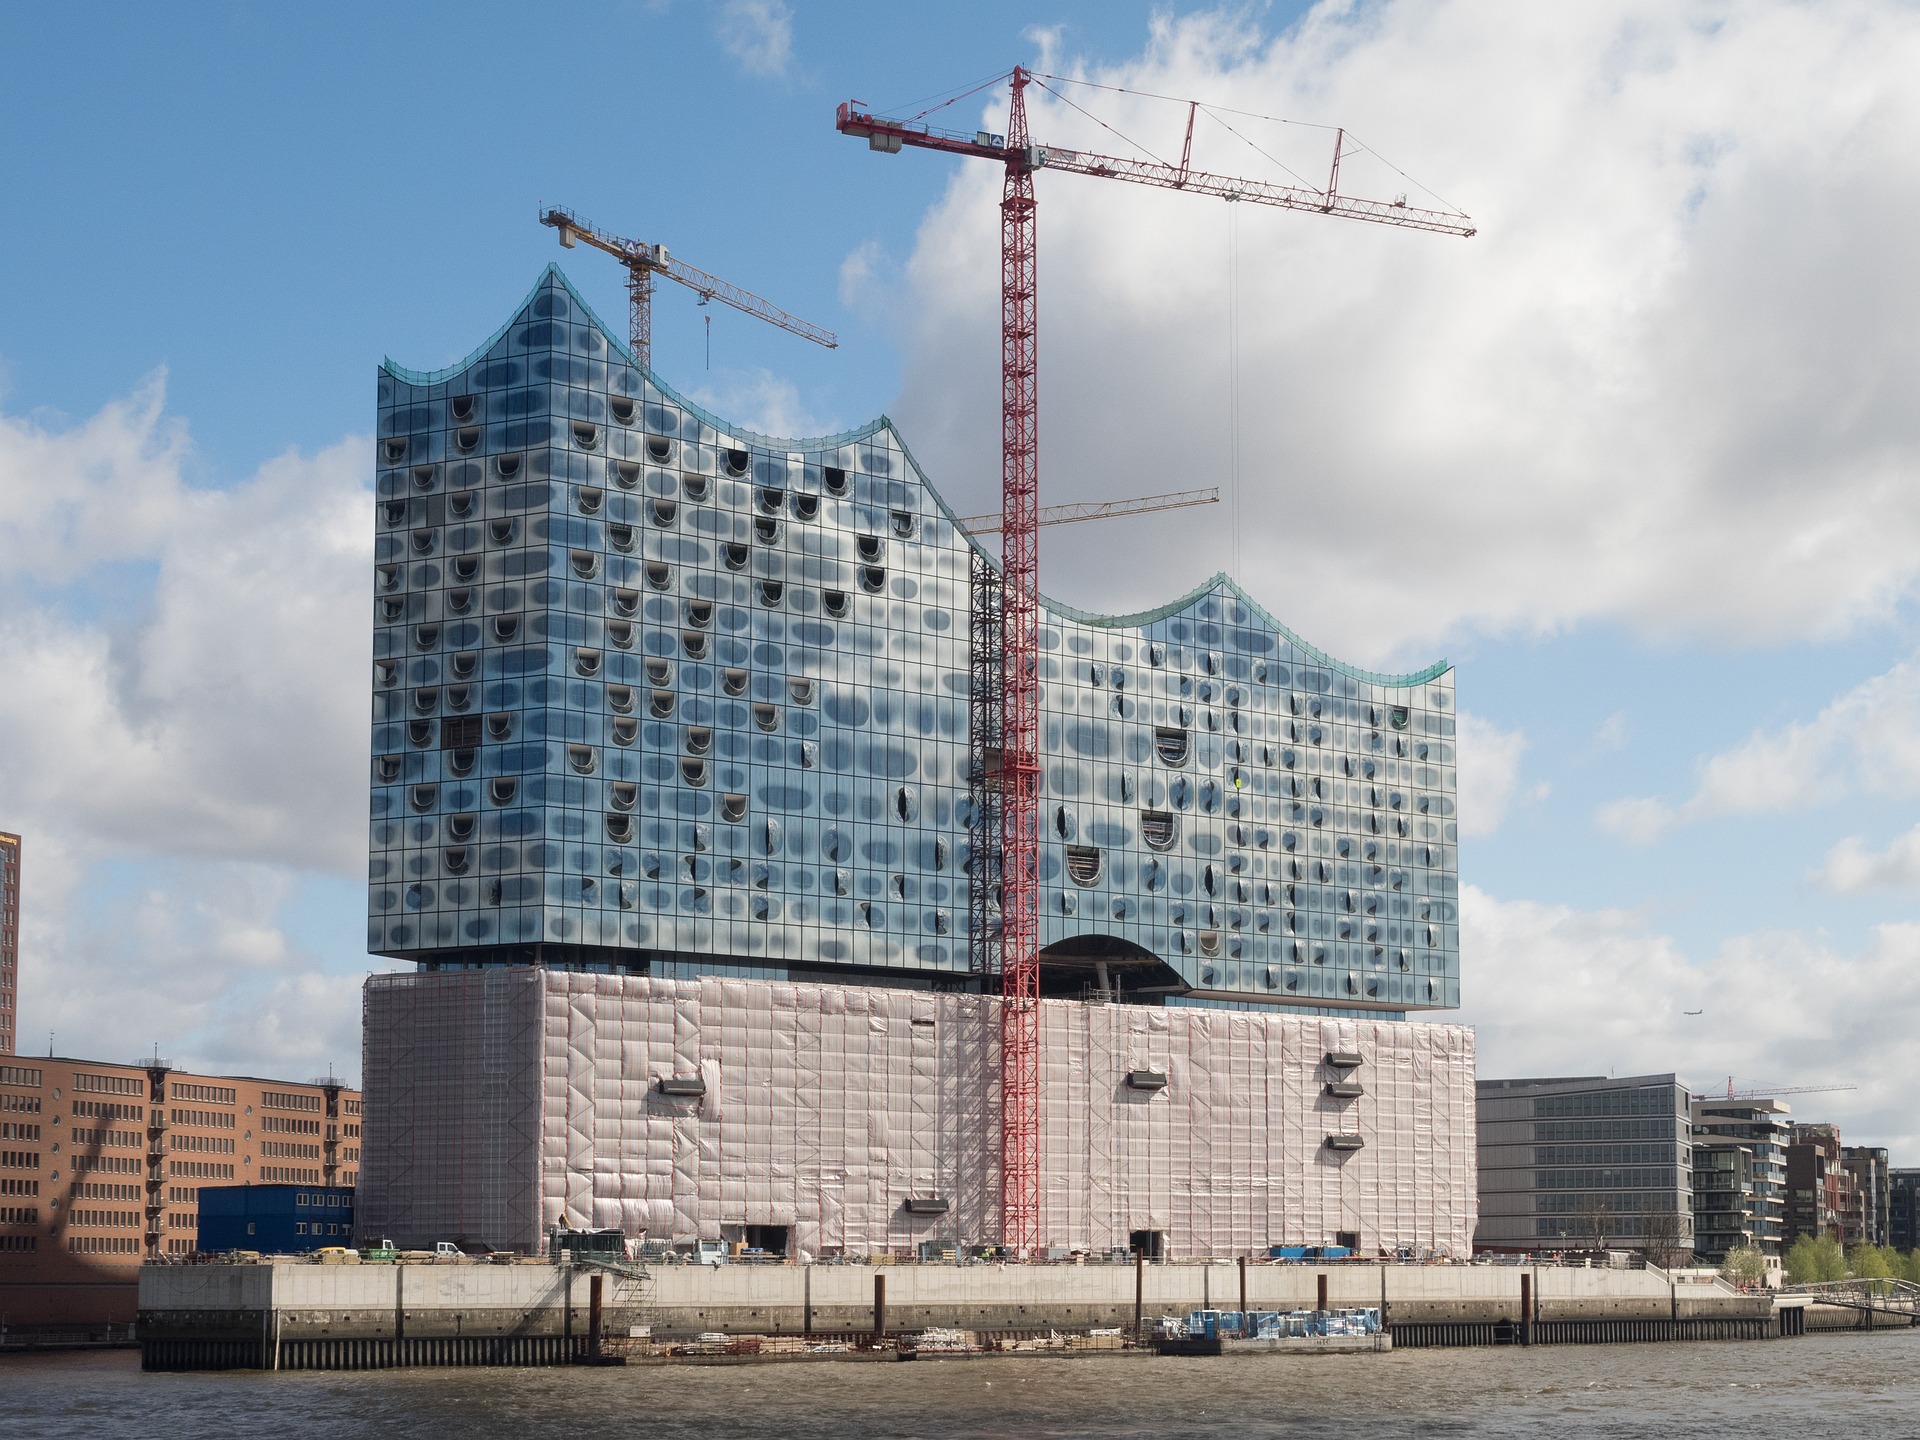 Budowa Elbphilharmonie Hamburg trwała dziesięć lat, znacznie dłużej niż planowano.